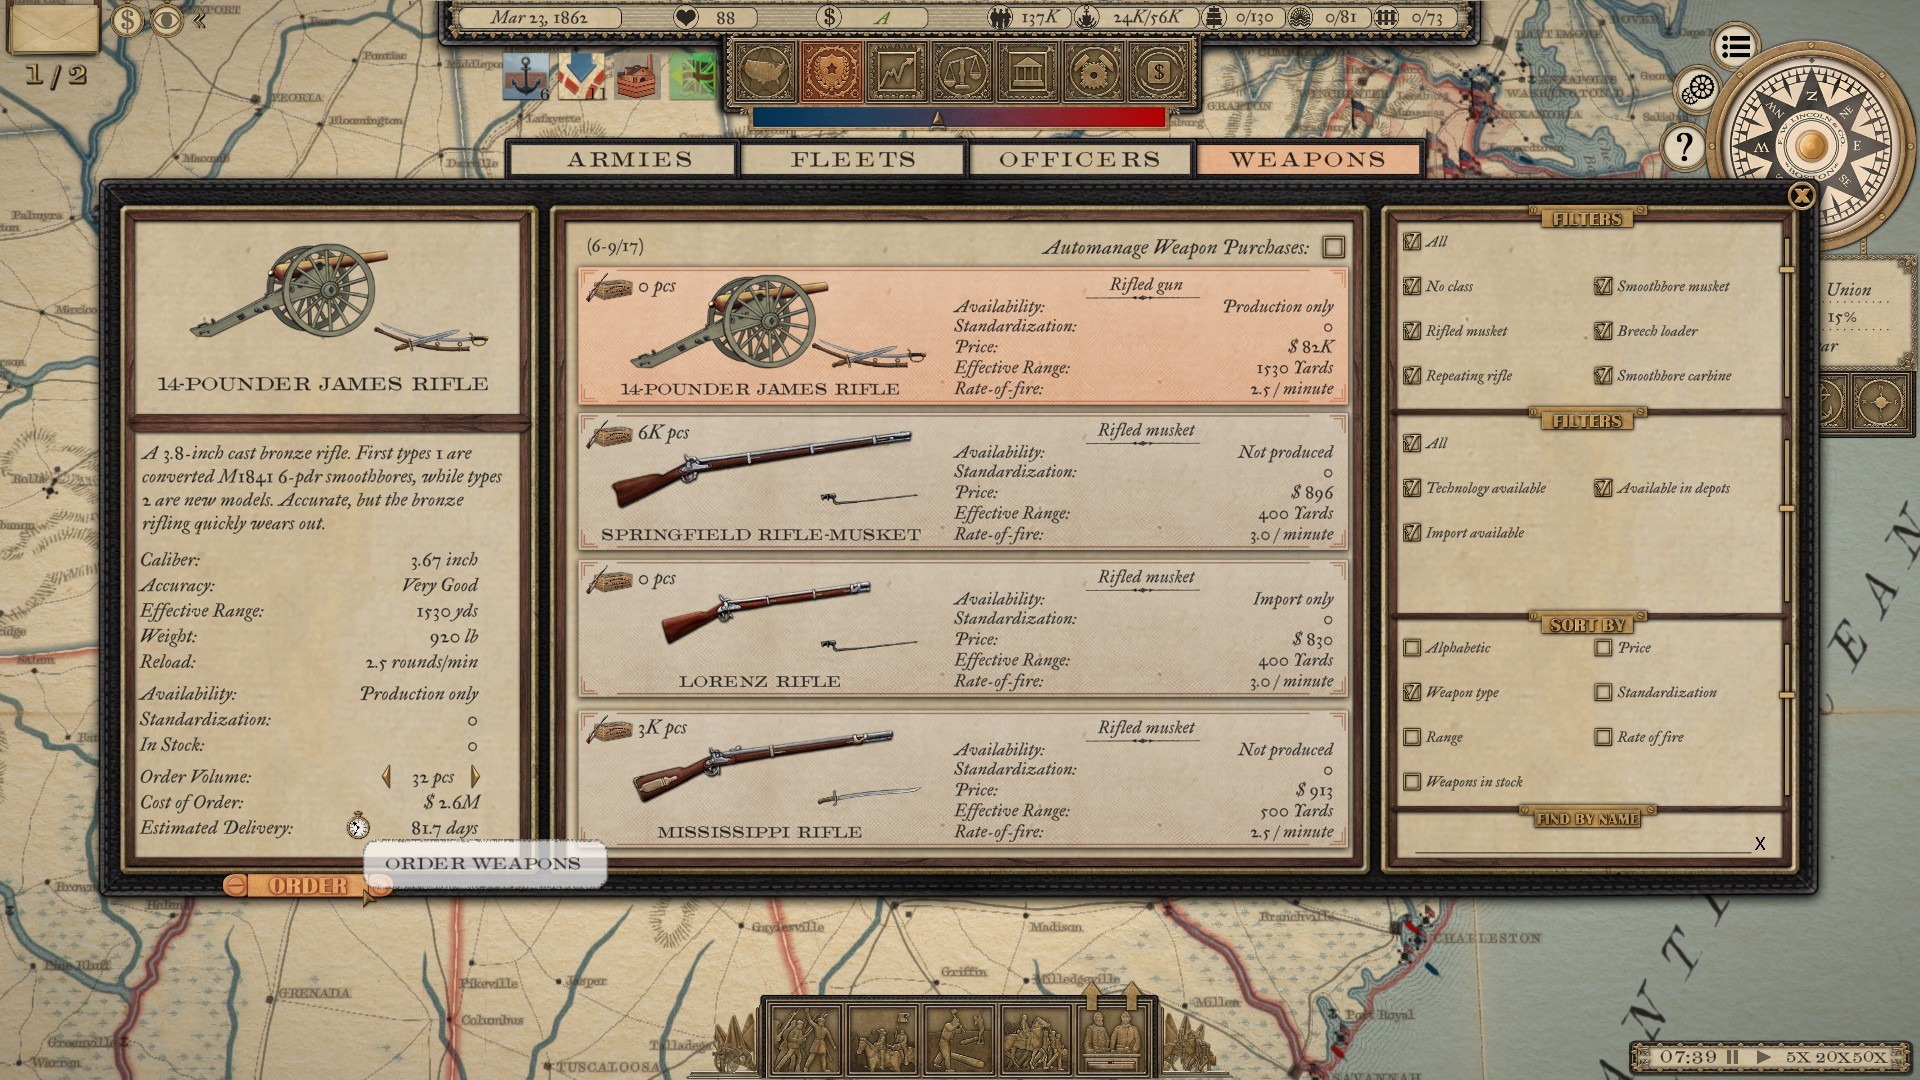 Grand Tactician: The Civil War (1861-1865) - screenshot 14